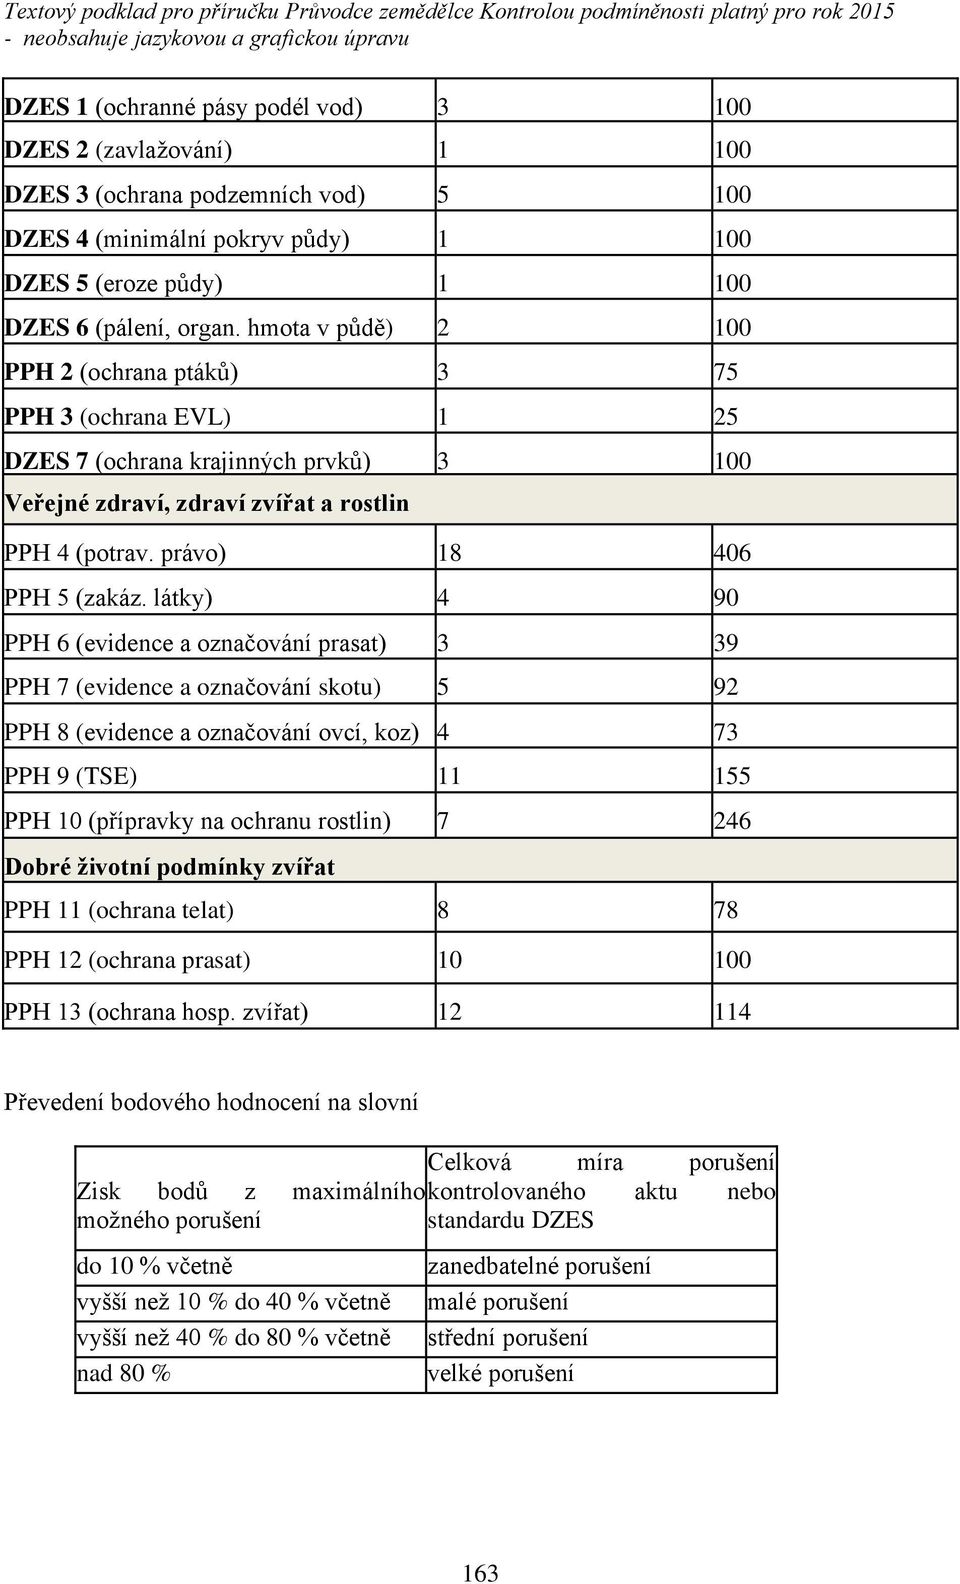 látkyě 4 90 PPH 6 Ěevidence a označování prasatě 3 39 PPH 7 (evidence a označování skotu) 5 92 PPH 8 (evidence a označování ovcí, kozě 4 73 PPH 9 (TSE) 11 155 PPH 10 Ěp ípravky na ochranu rostlině 7